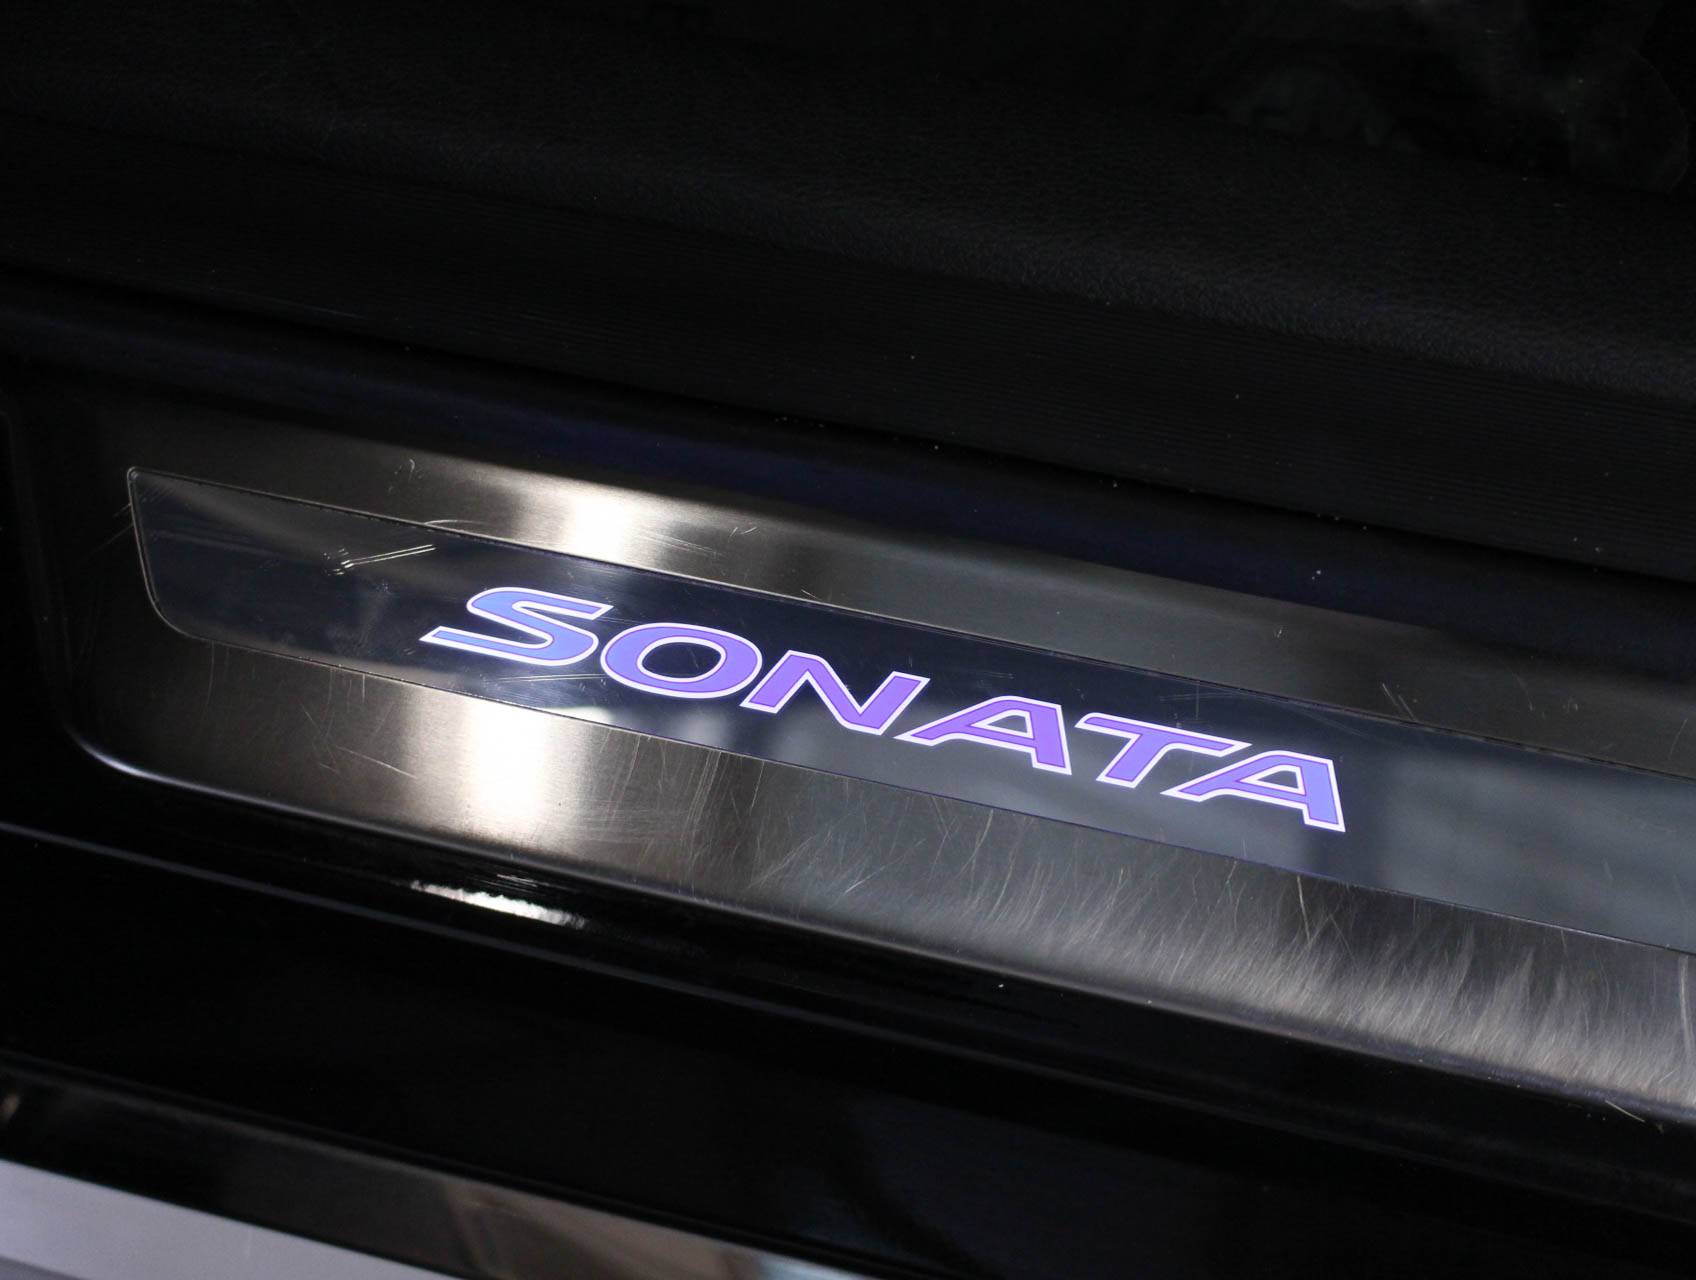 Florida Fine Cars - Used HYUNDAI SONATA 2015 MARGATE Limited